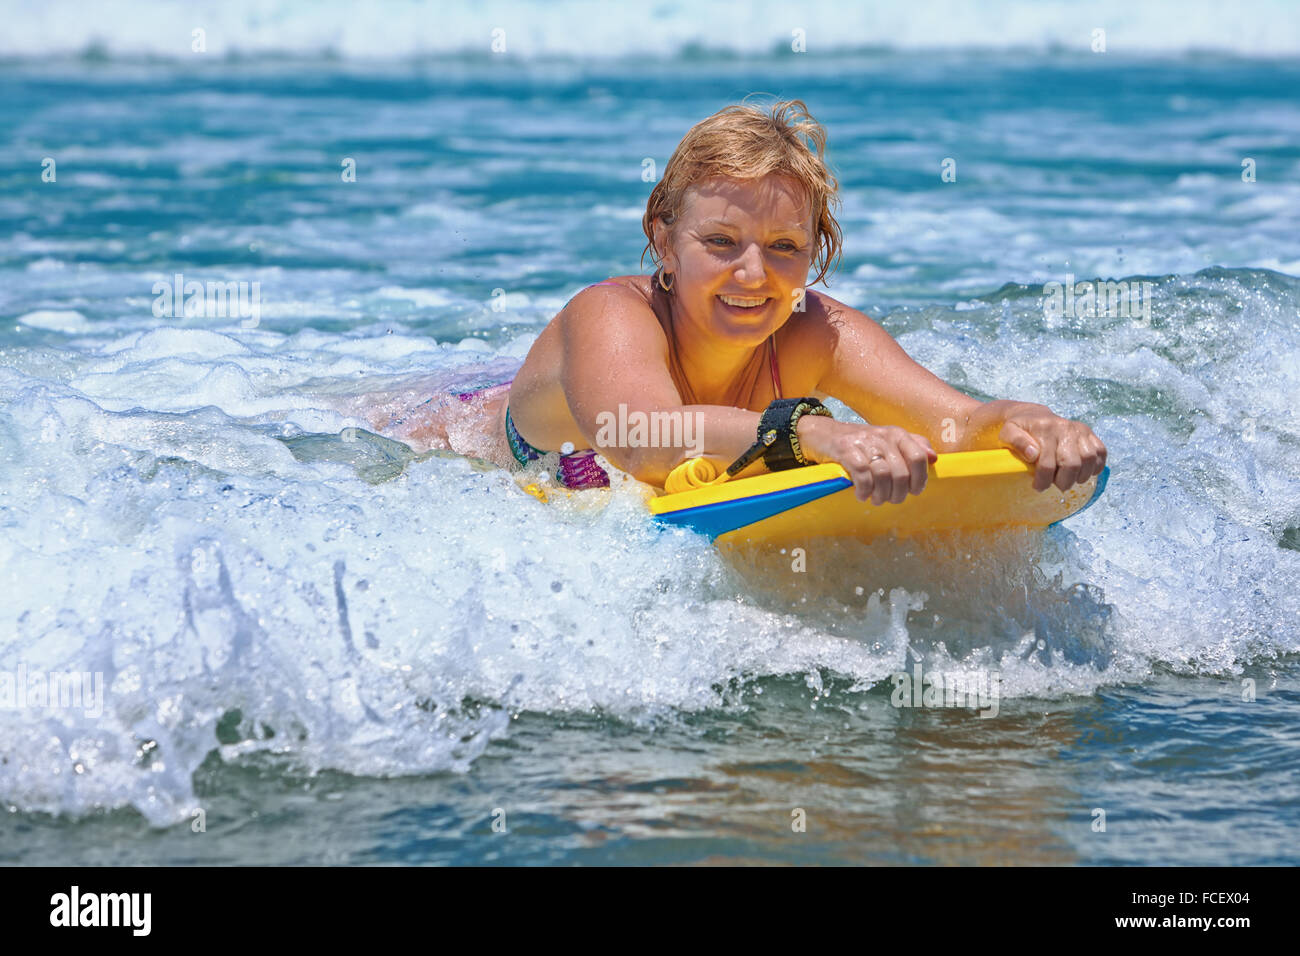 Alegre mujer de mediana edad - surfer con bodyboard surf la diversión en las pequeñas olas del mar Fotografía de stock Alamy